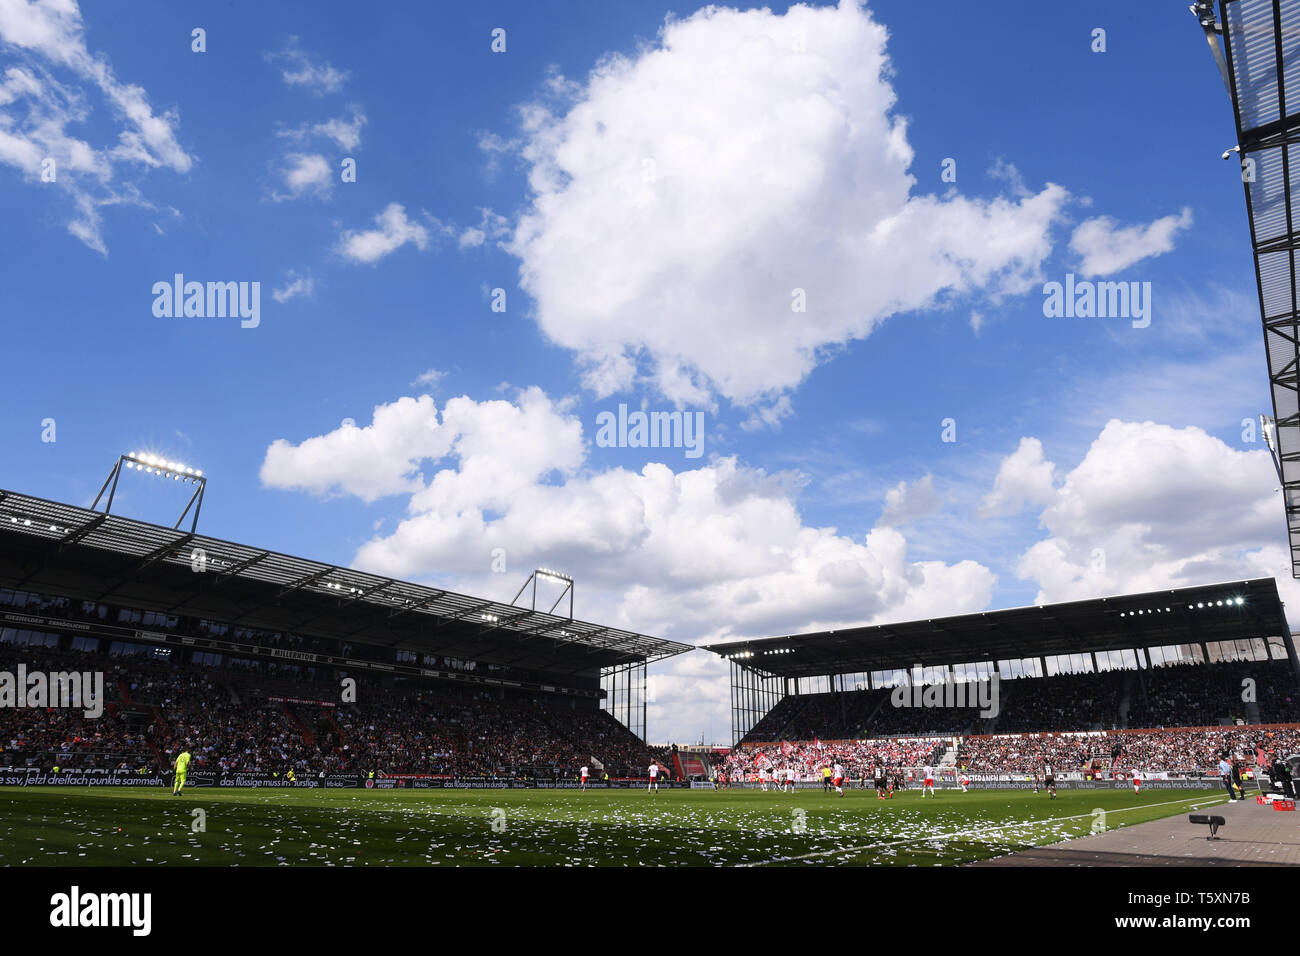 Hambourg, Allemagne - 27 avril : vue générale pendant la deuxième match de Bundesliga entre FC Sankt Pauli et SSV Jahn Regensburg à Millerntorstadion sur Ap Banque D'Images